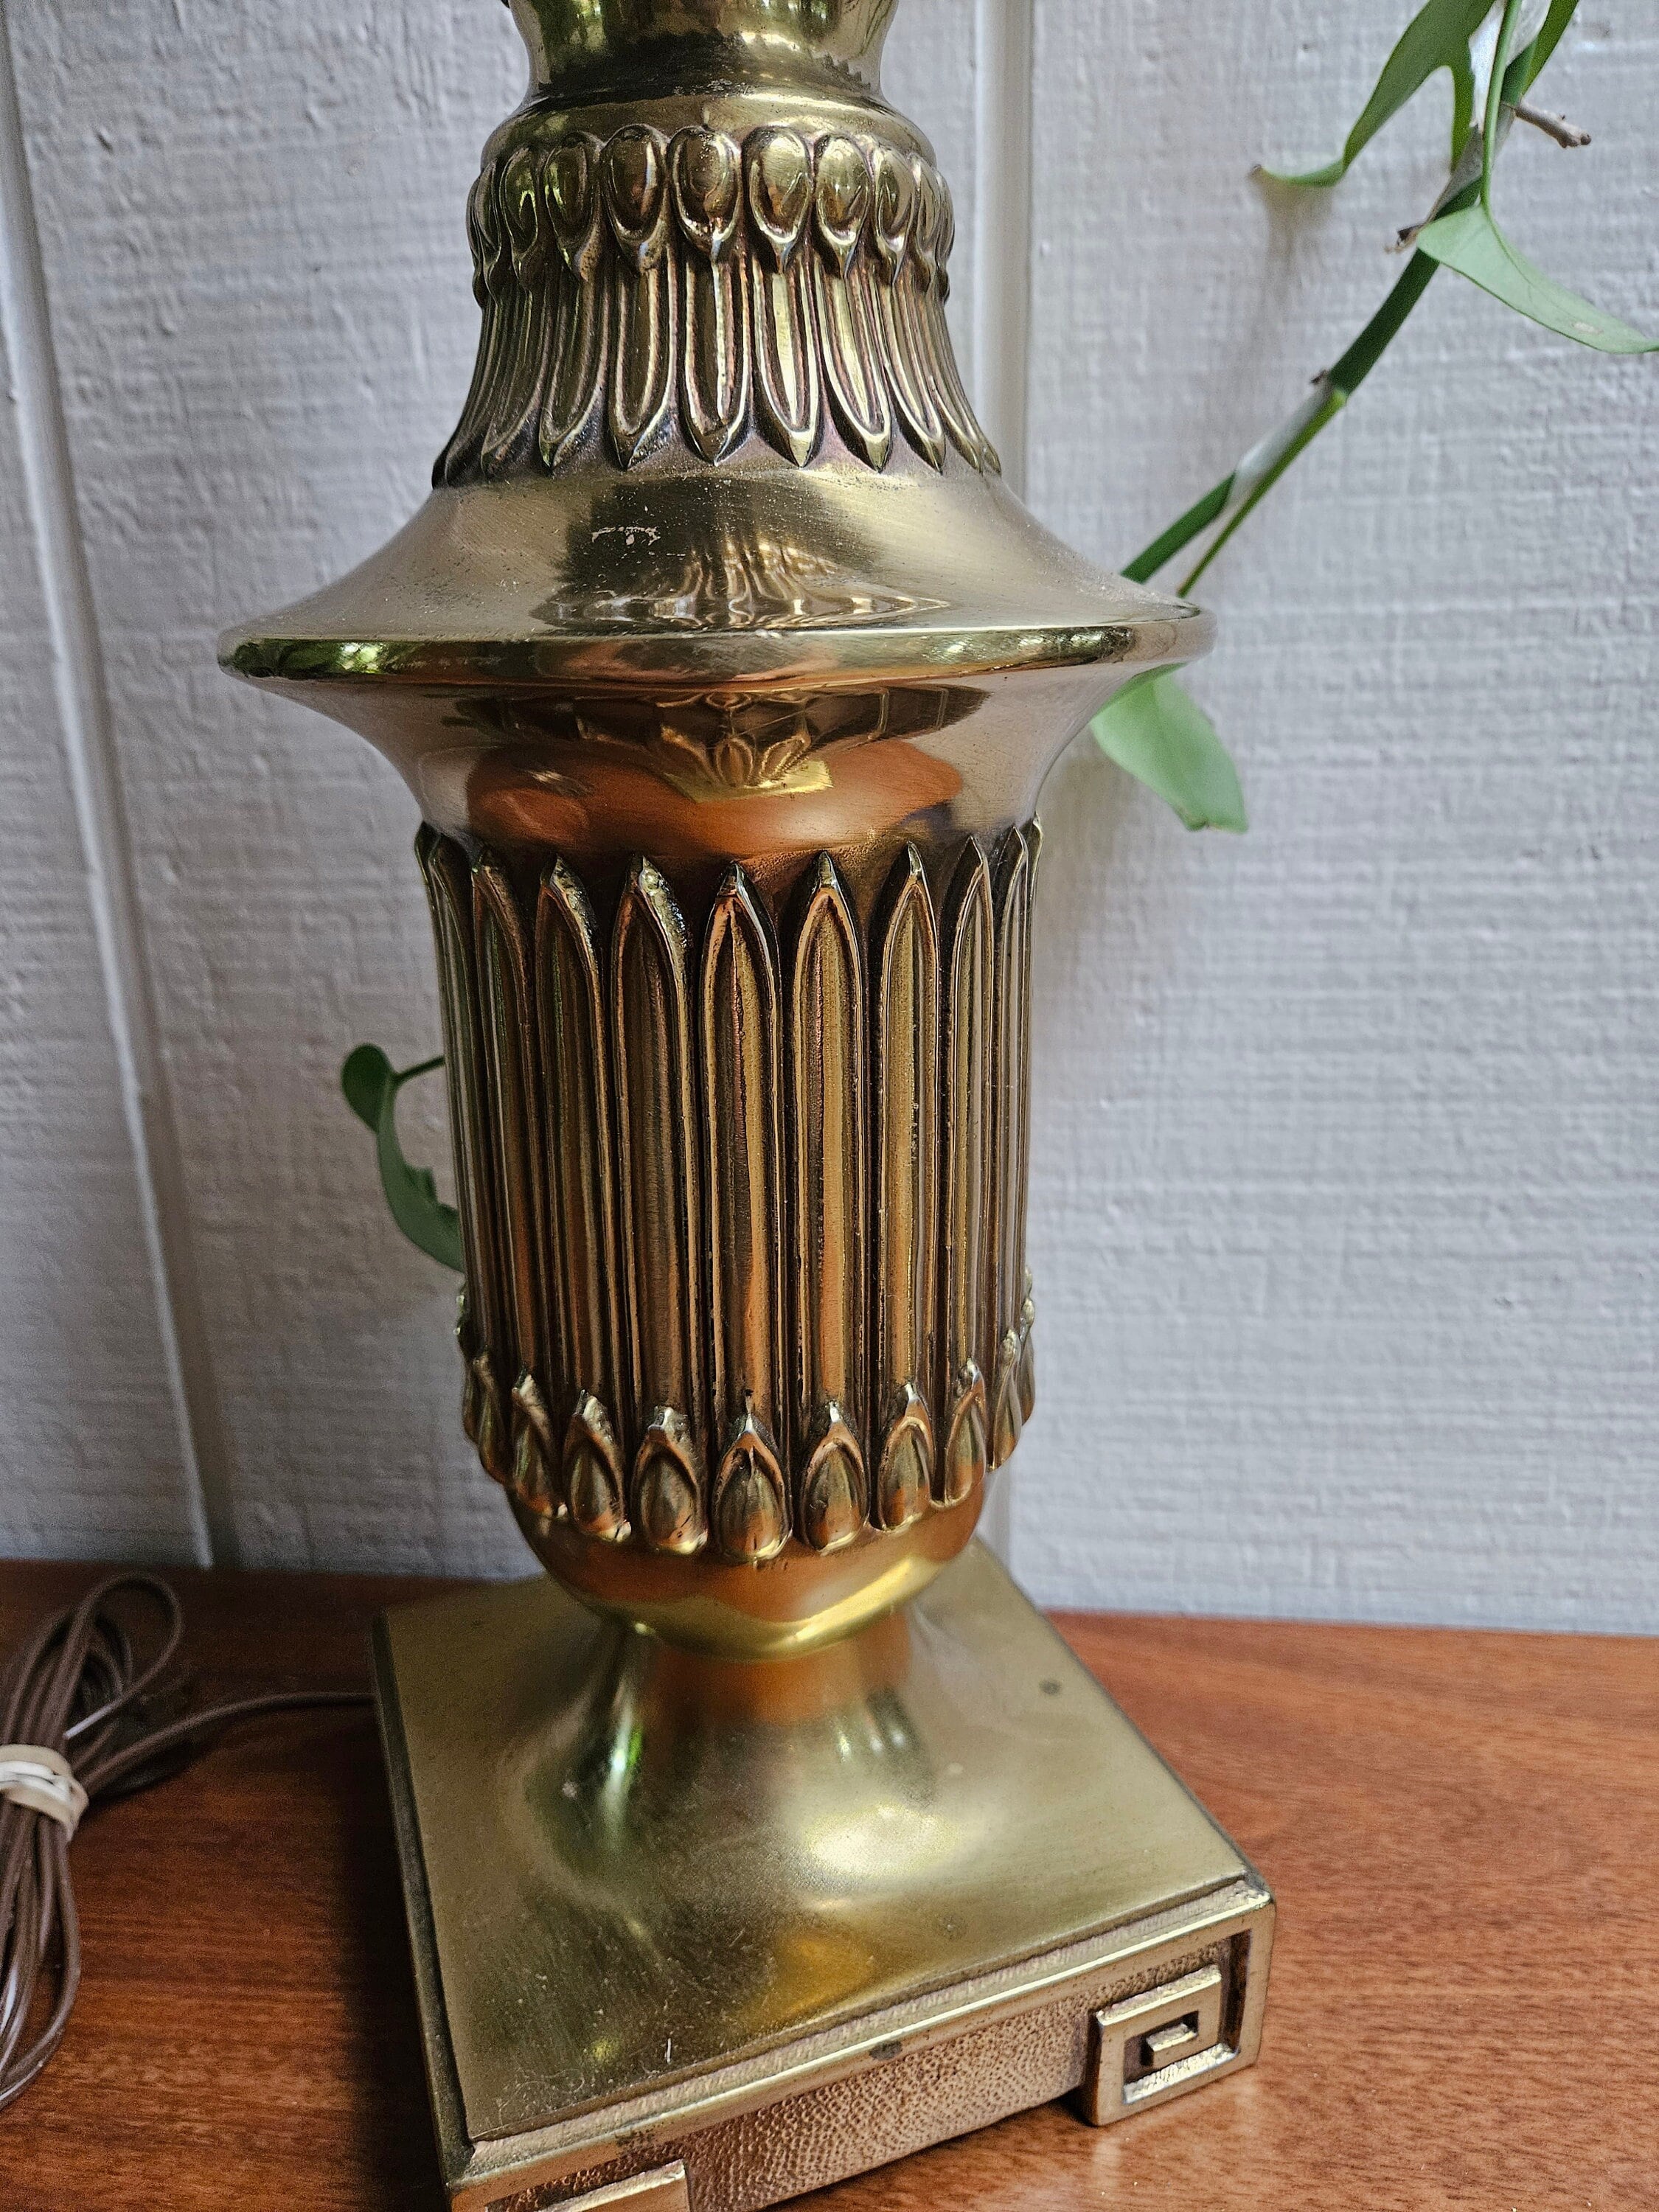 Vintage Small Brass German Hurricane or Oil Kerosene Lamp 1950s